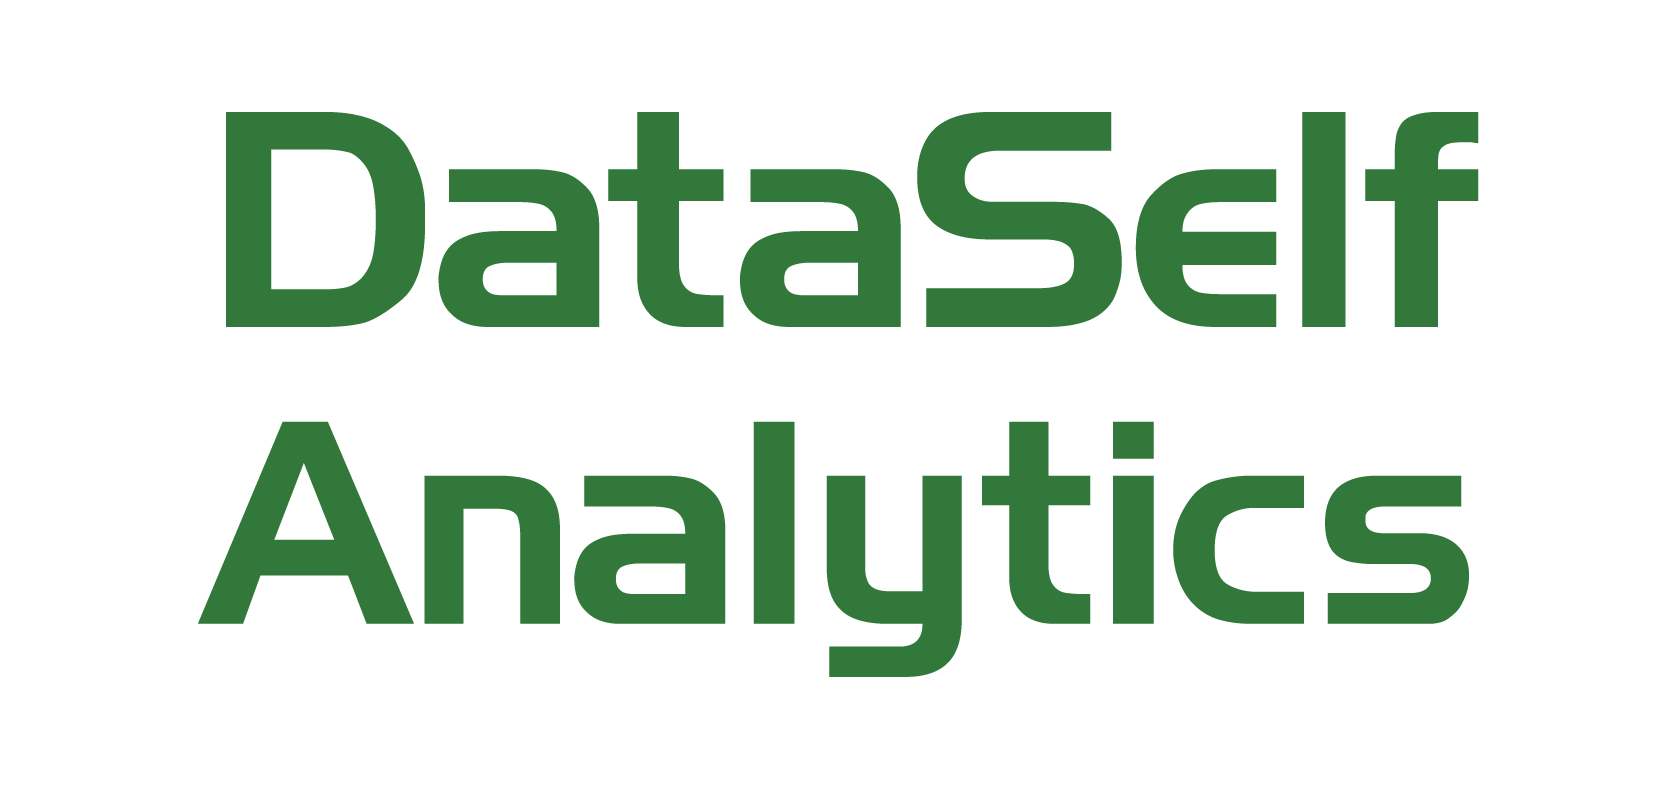 DataSelf Analytics